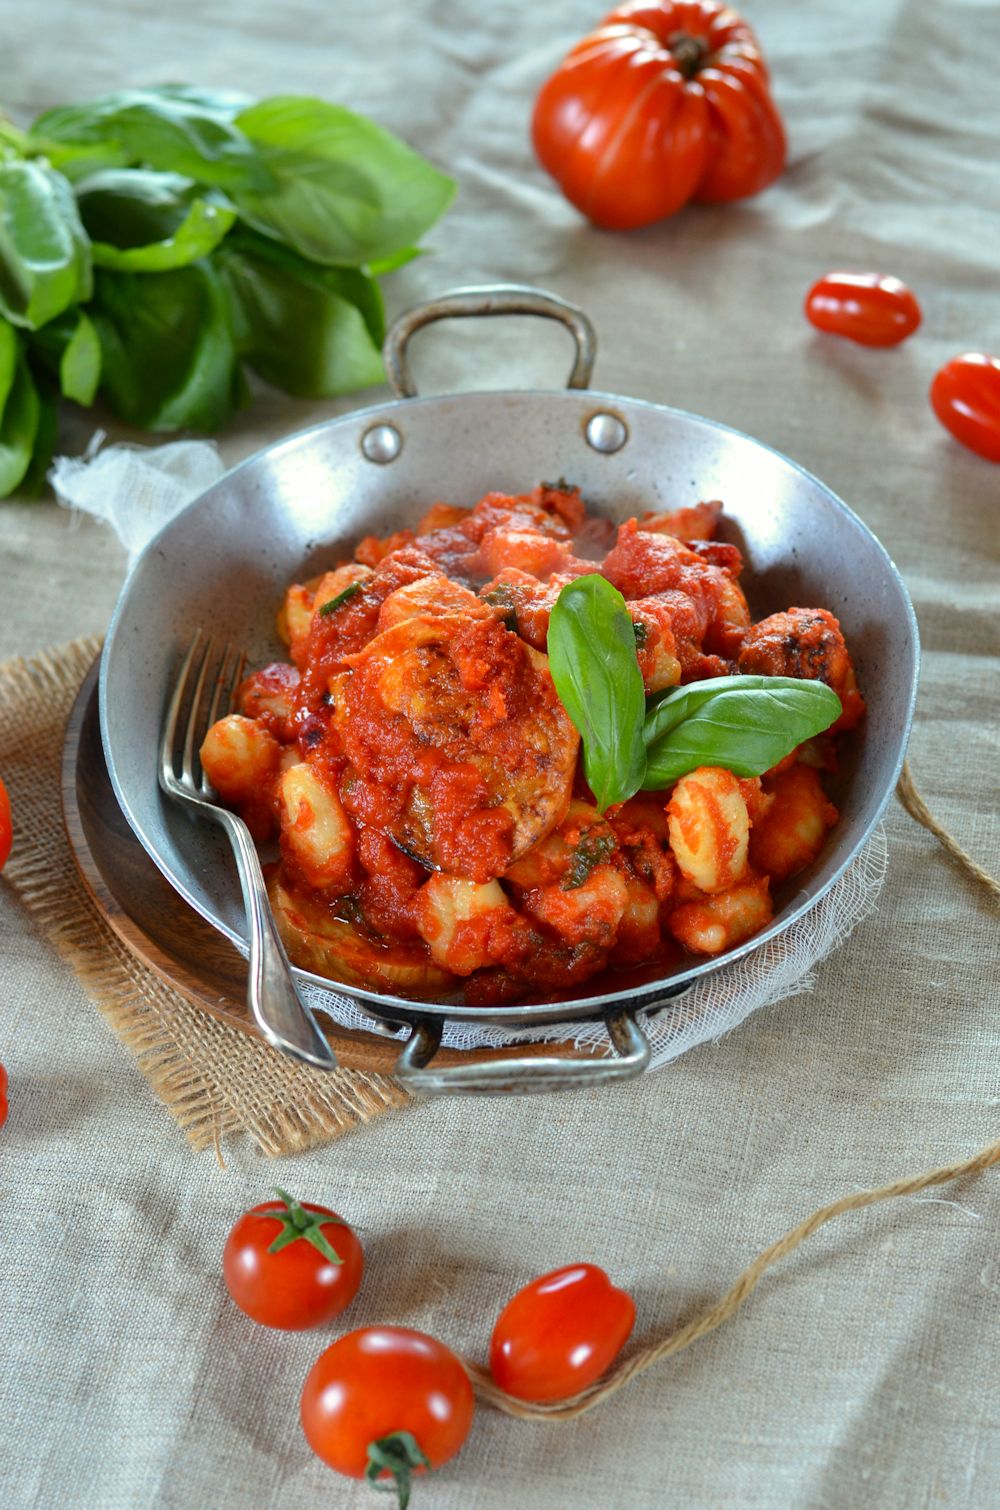 Gratin de gnocchi sauce tomate, basilic et mozzarella fumée. Facile à faire et délicieuse, la recette est à retrouver sur le blog de cuisine tangerinezest.com